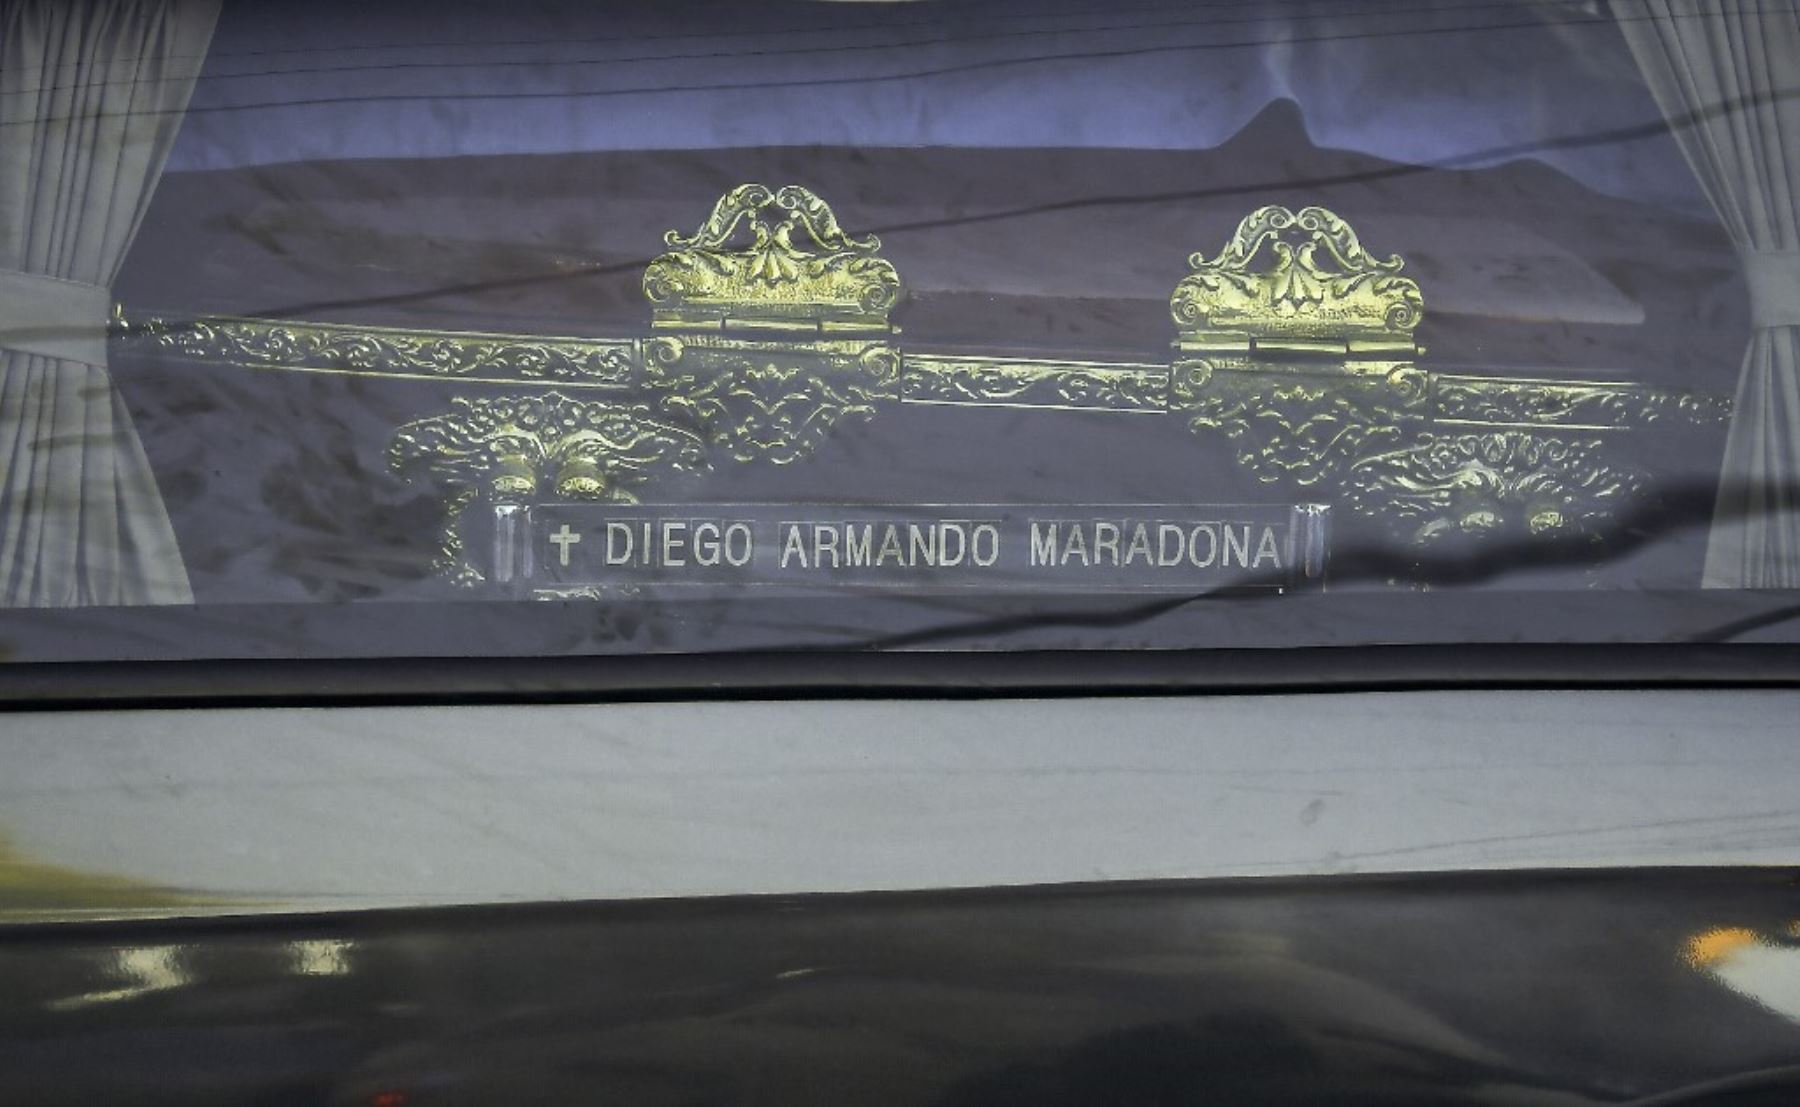 El coche fúnebre que transportaba al fallecido leyenda del fútbol argentino Diego Armando Maradona llega al cementerio Jardín Bella Vista, en la provincia de Buenos Aires. Foto: AFP